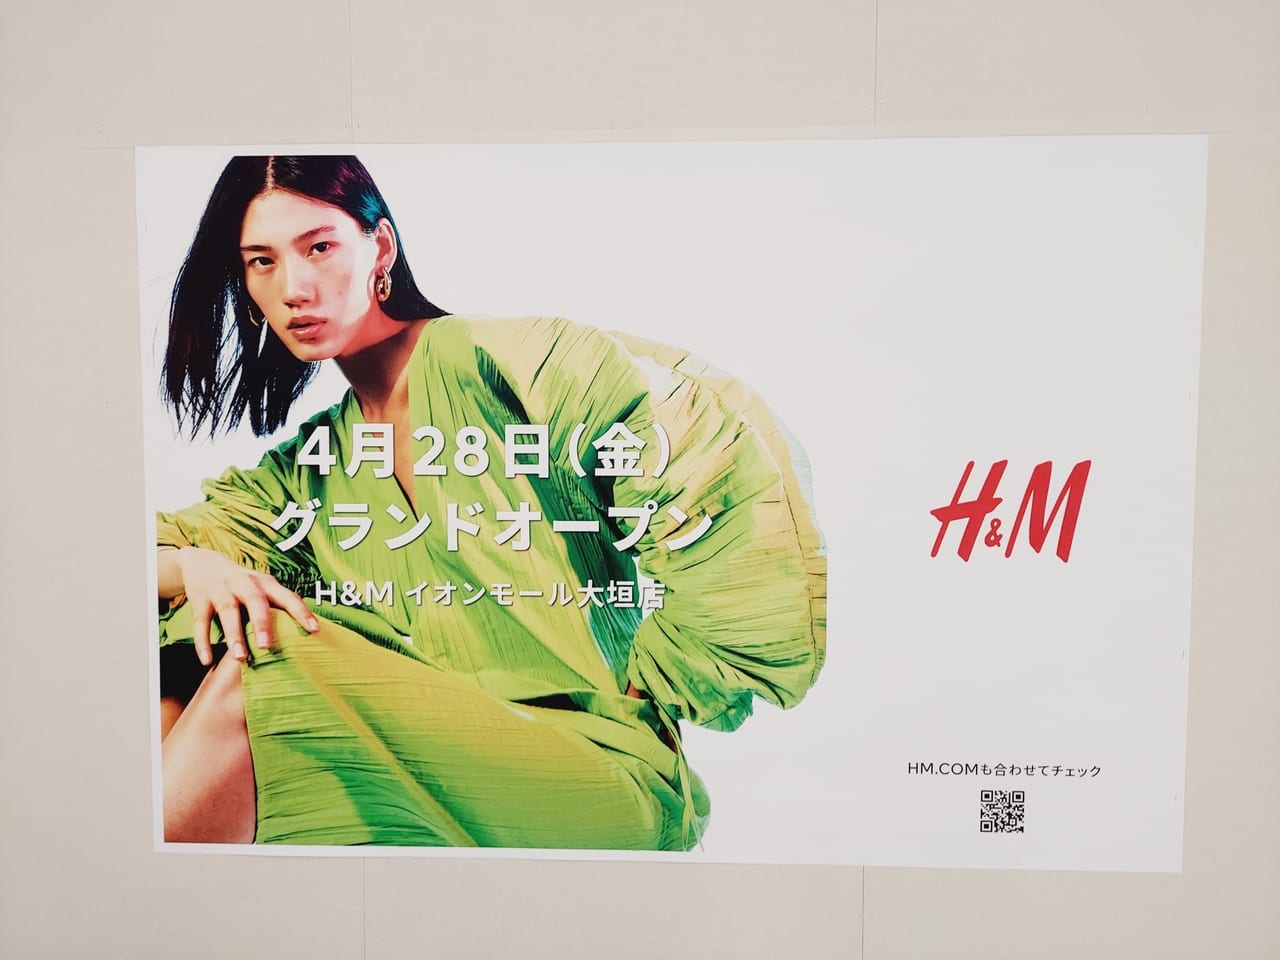 イオンモール大垣H&Mお知らせポスター